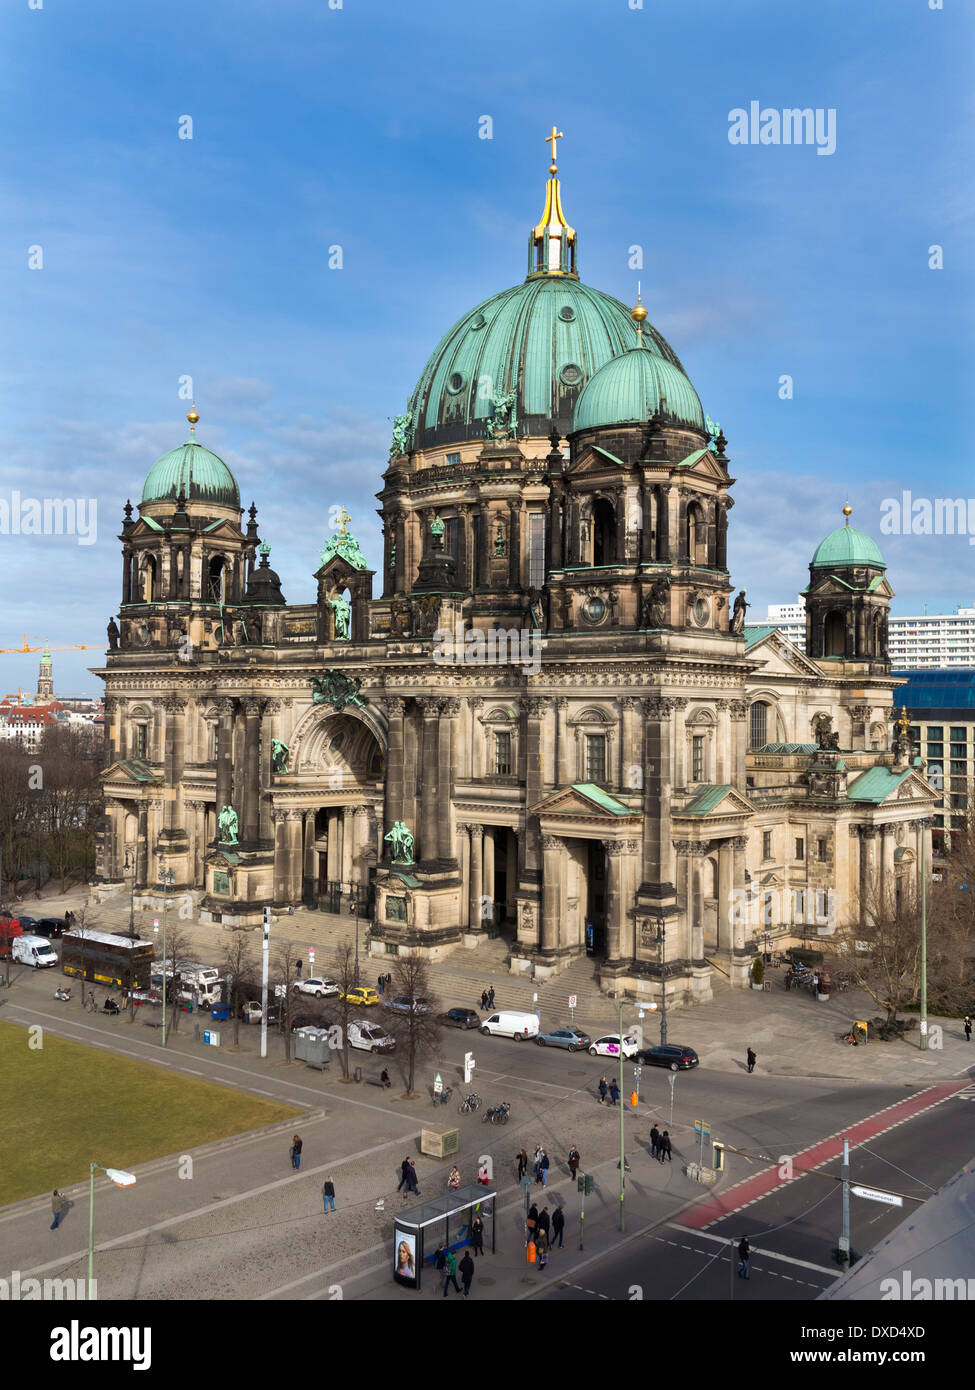 Gli ornati vecchia cattedrale Berliner Dom nel centro della città di Berlino Germania Foto Stock